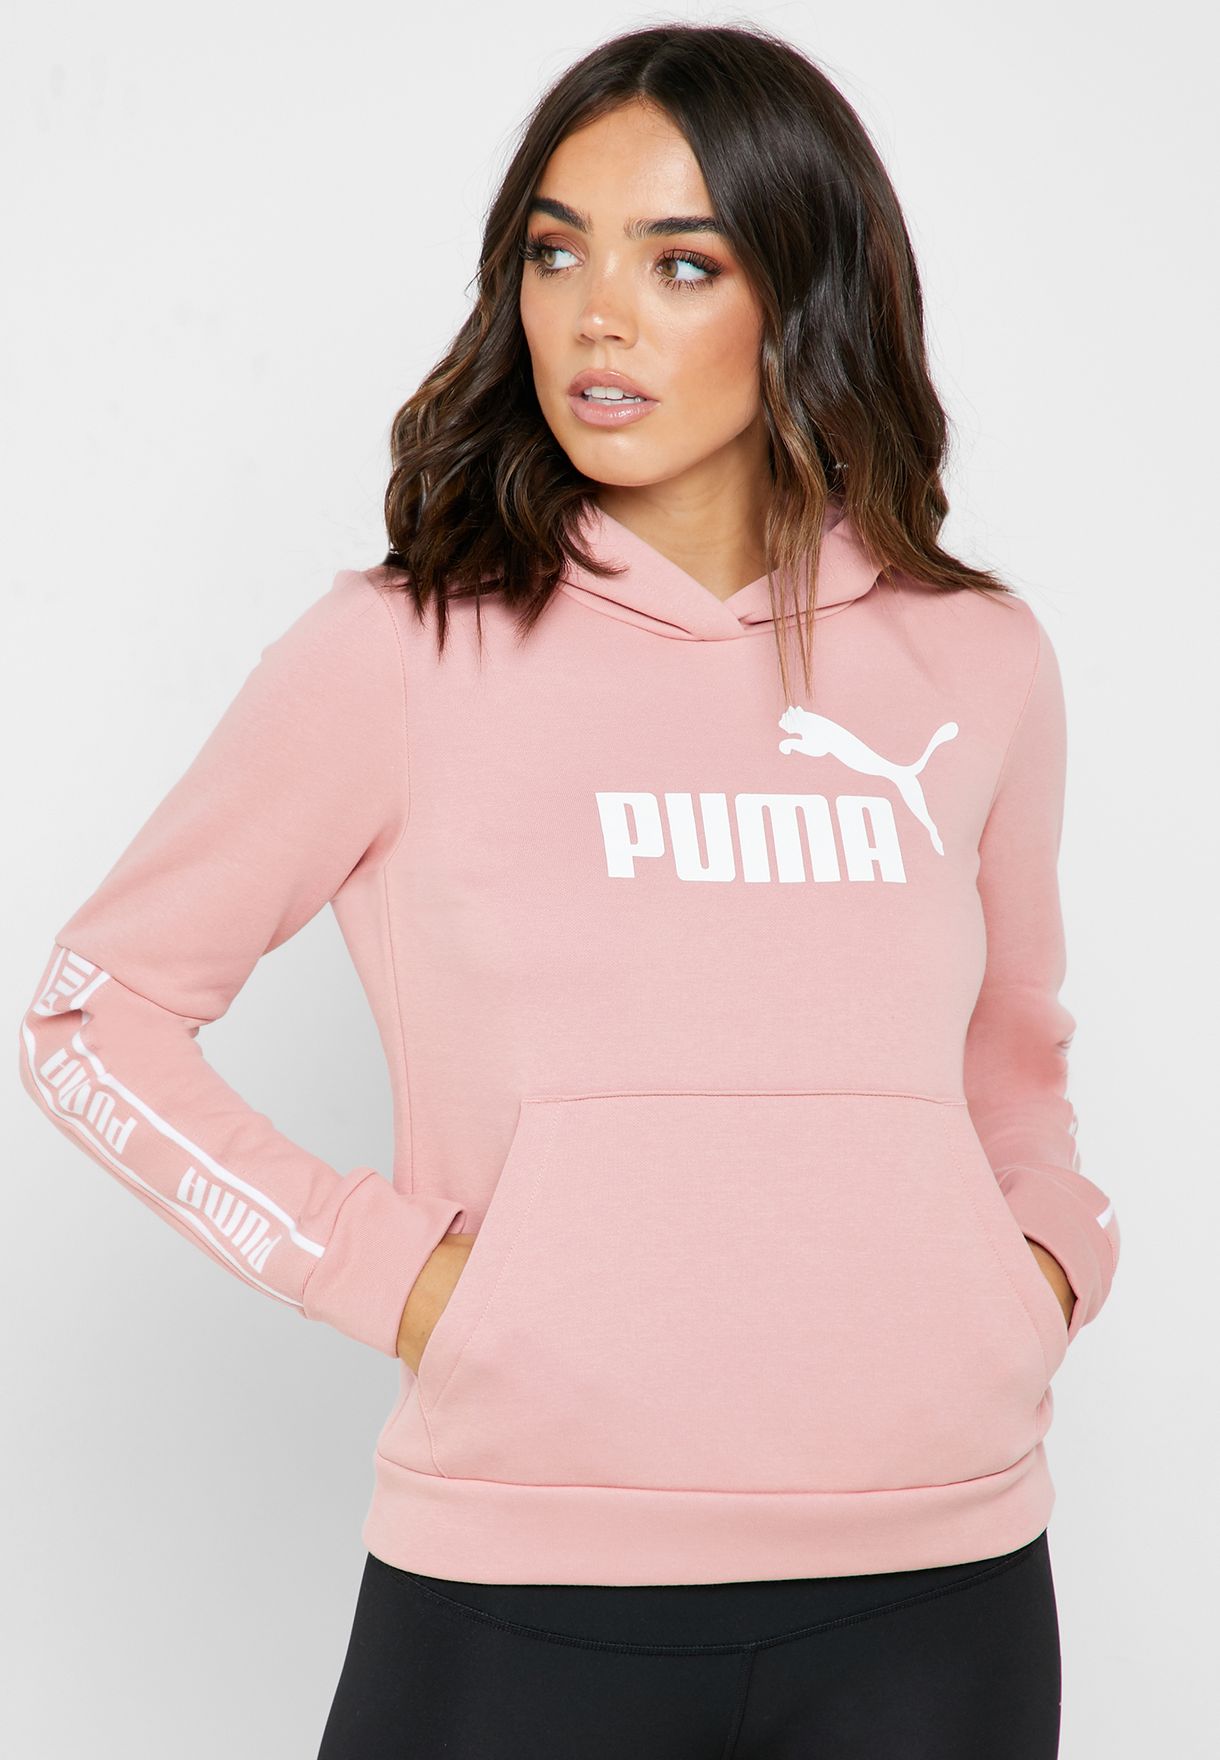 puma hoodie womens pink - 56% OFF 